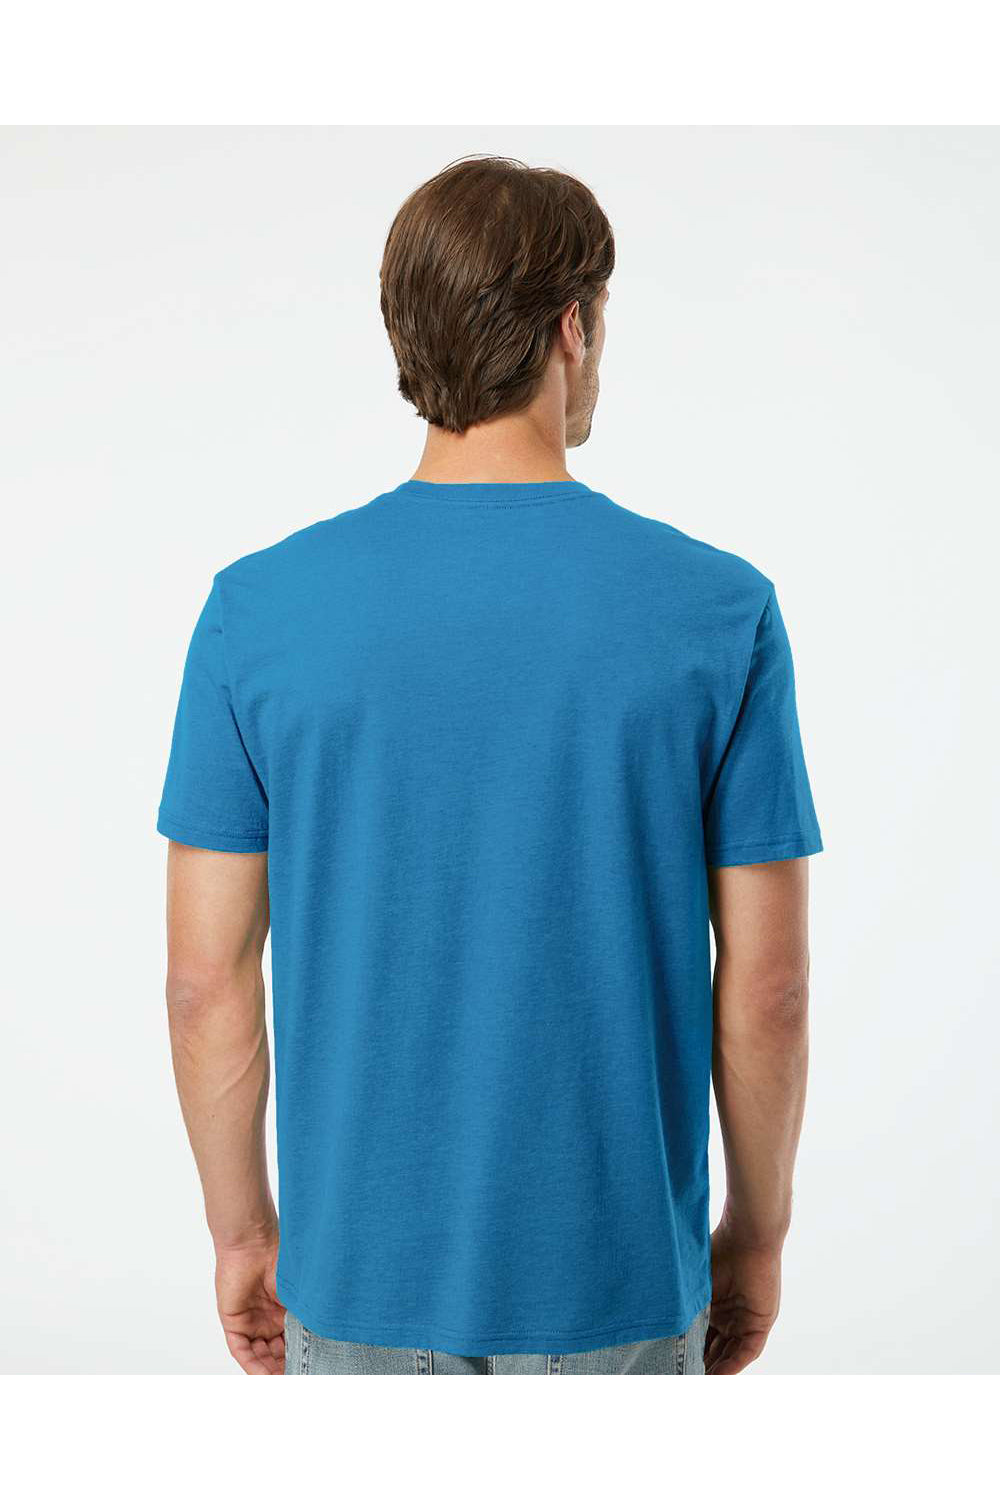 Kastlfel 2010 Mens RecycledSoft Short Sleve Crewneck T-Shirt Breaker Blue Model Back